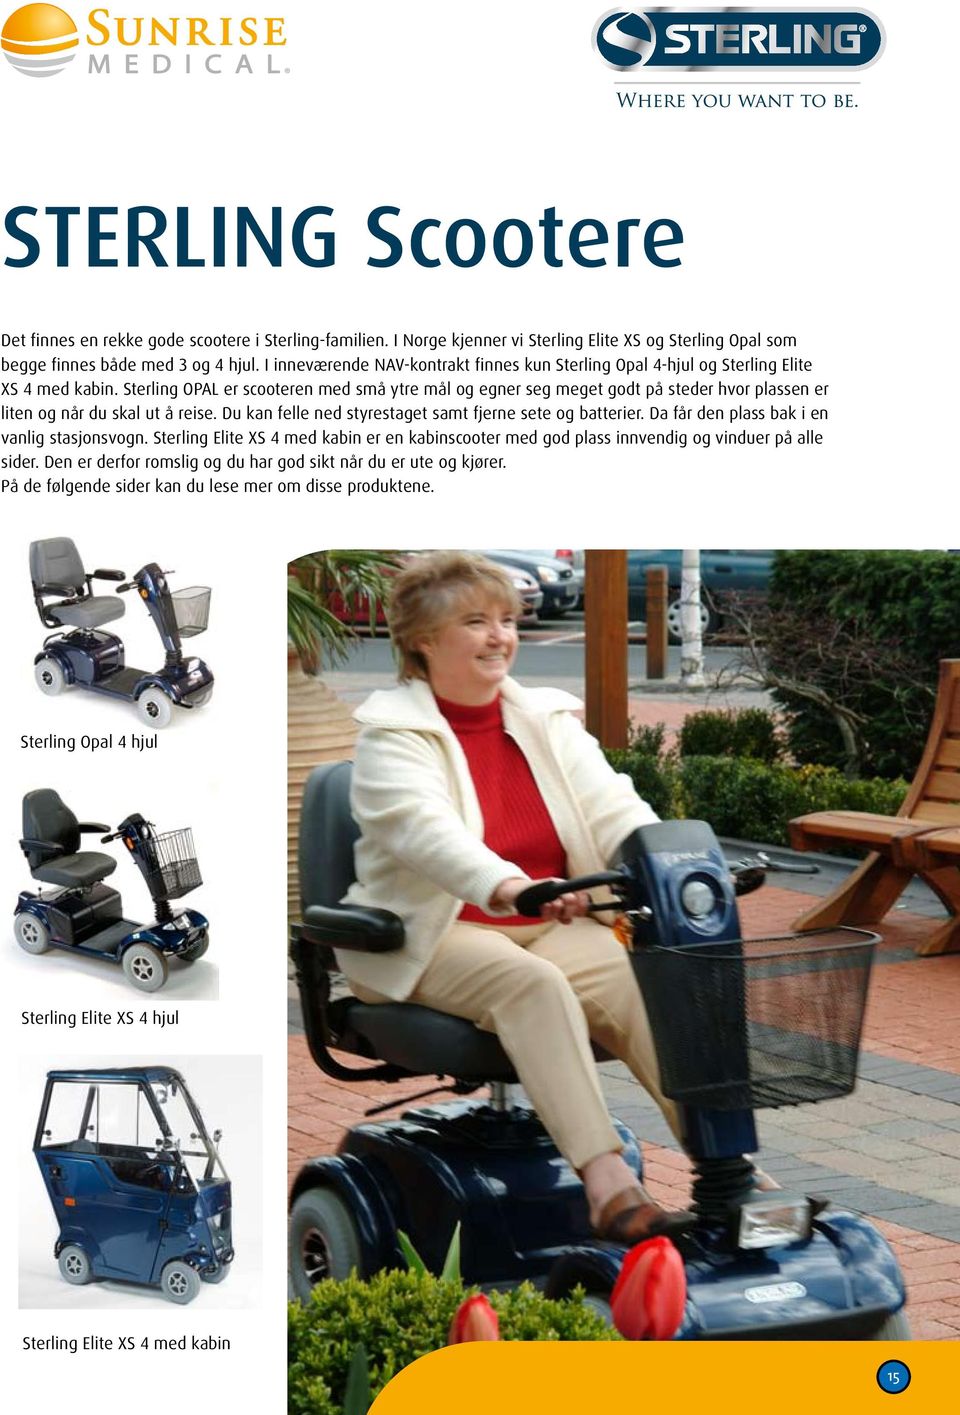 Sterling OPAL er scooteren med små ytre mål og egner seg meget godt på steder hvor plassen er liten og når du skal ut å reise. Du kan felle ned styrestaget samt fjerne sete og batterier.